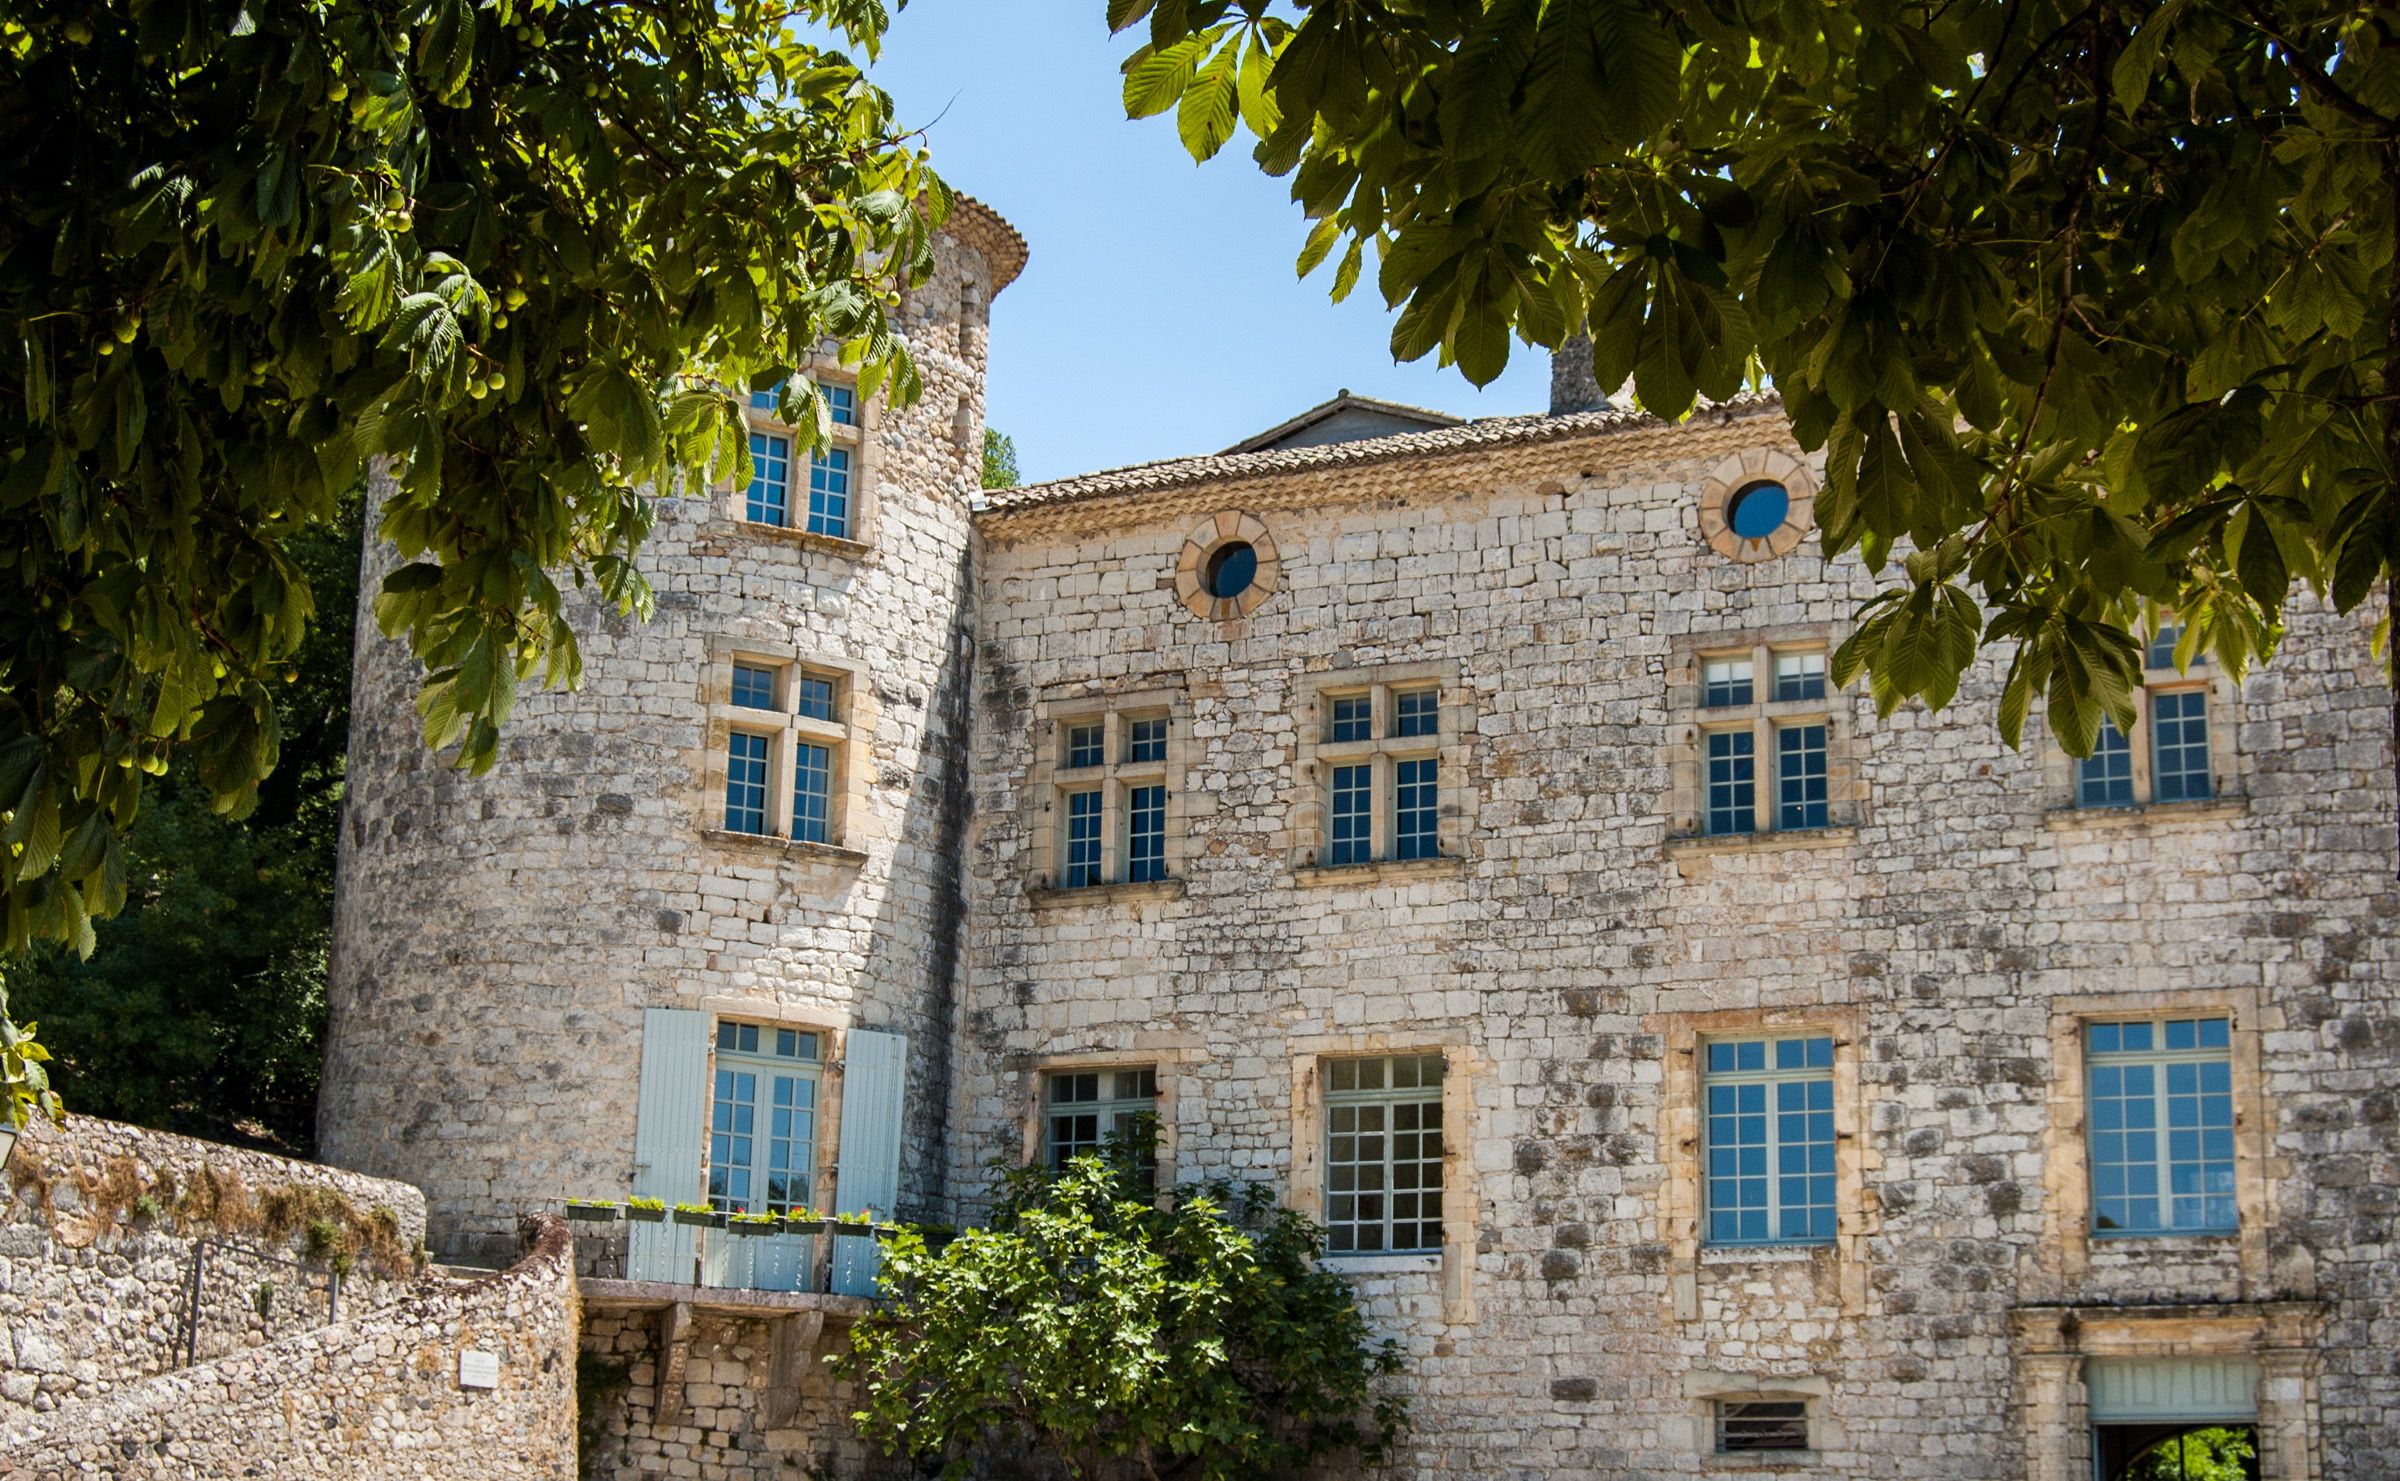 Le château de Vogüé